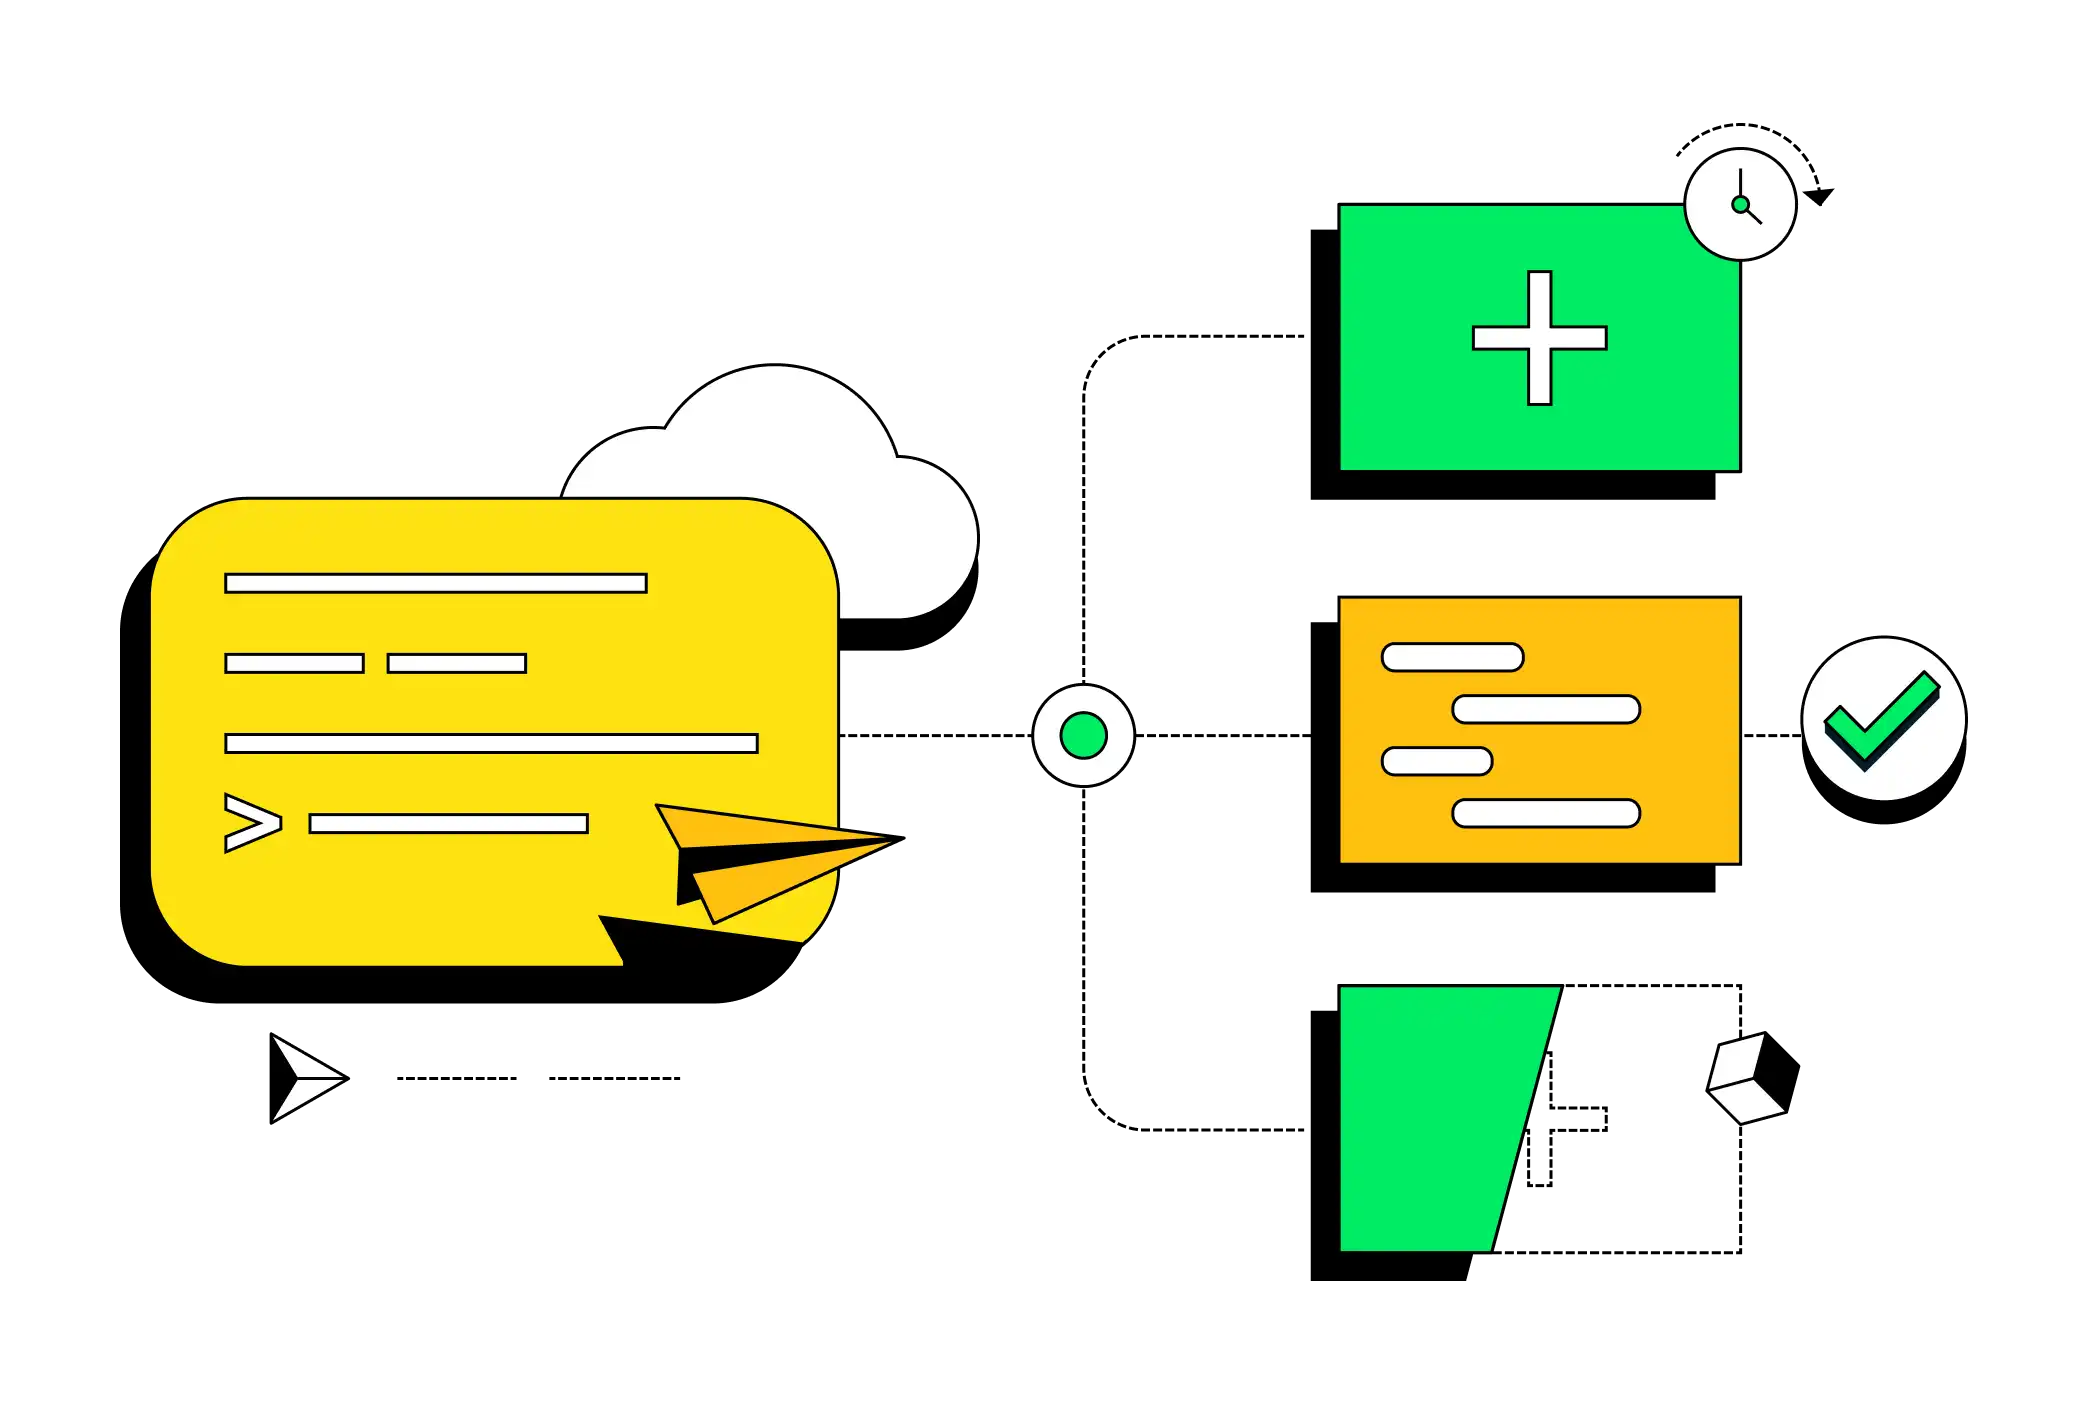 Ilustração abstrata mostrando um terminal interagindo com diferentes sistemas